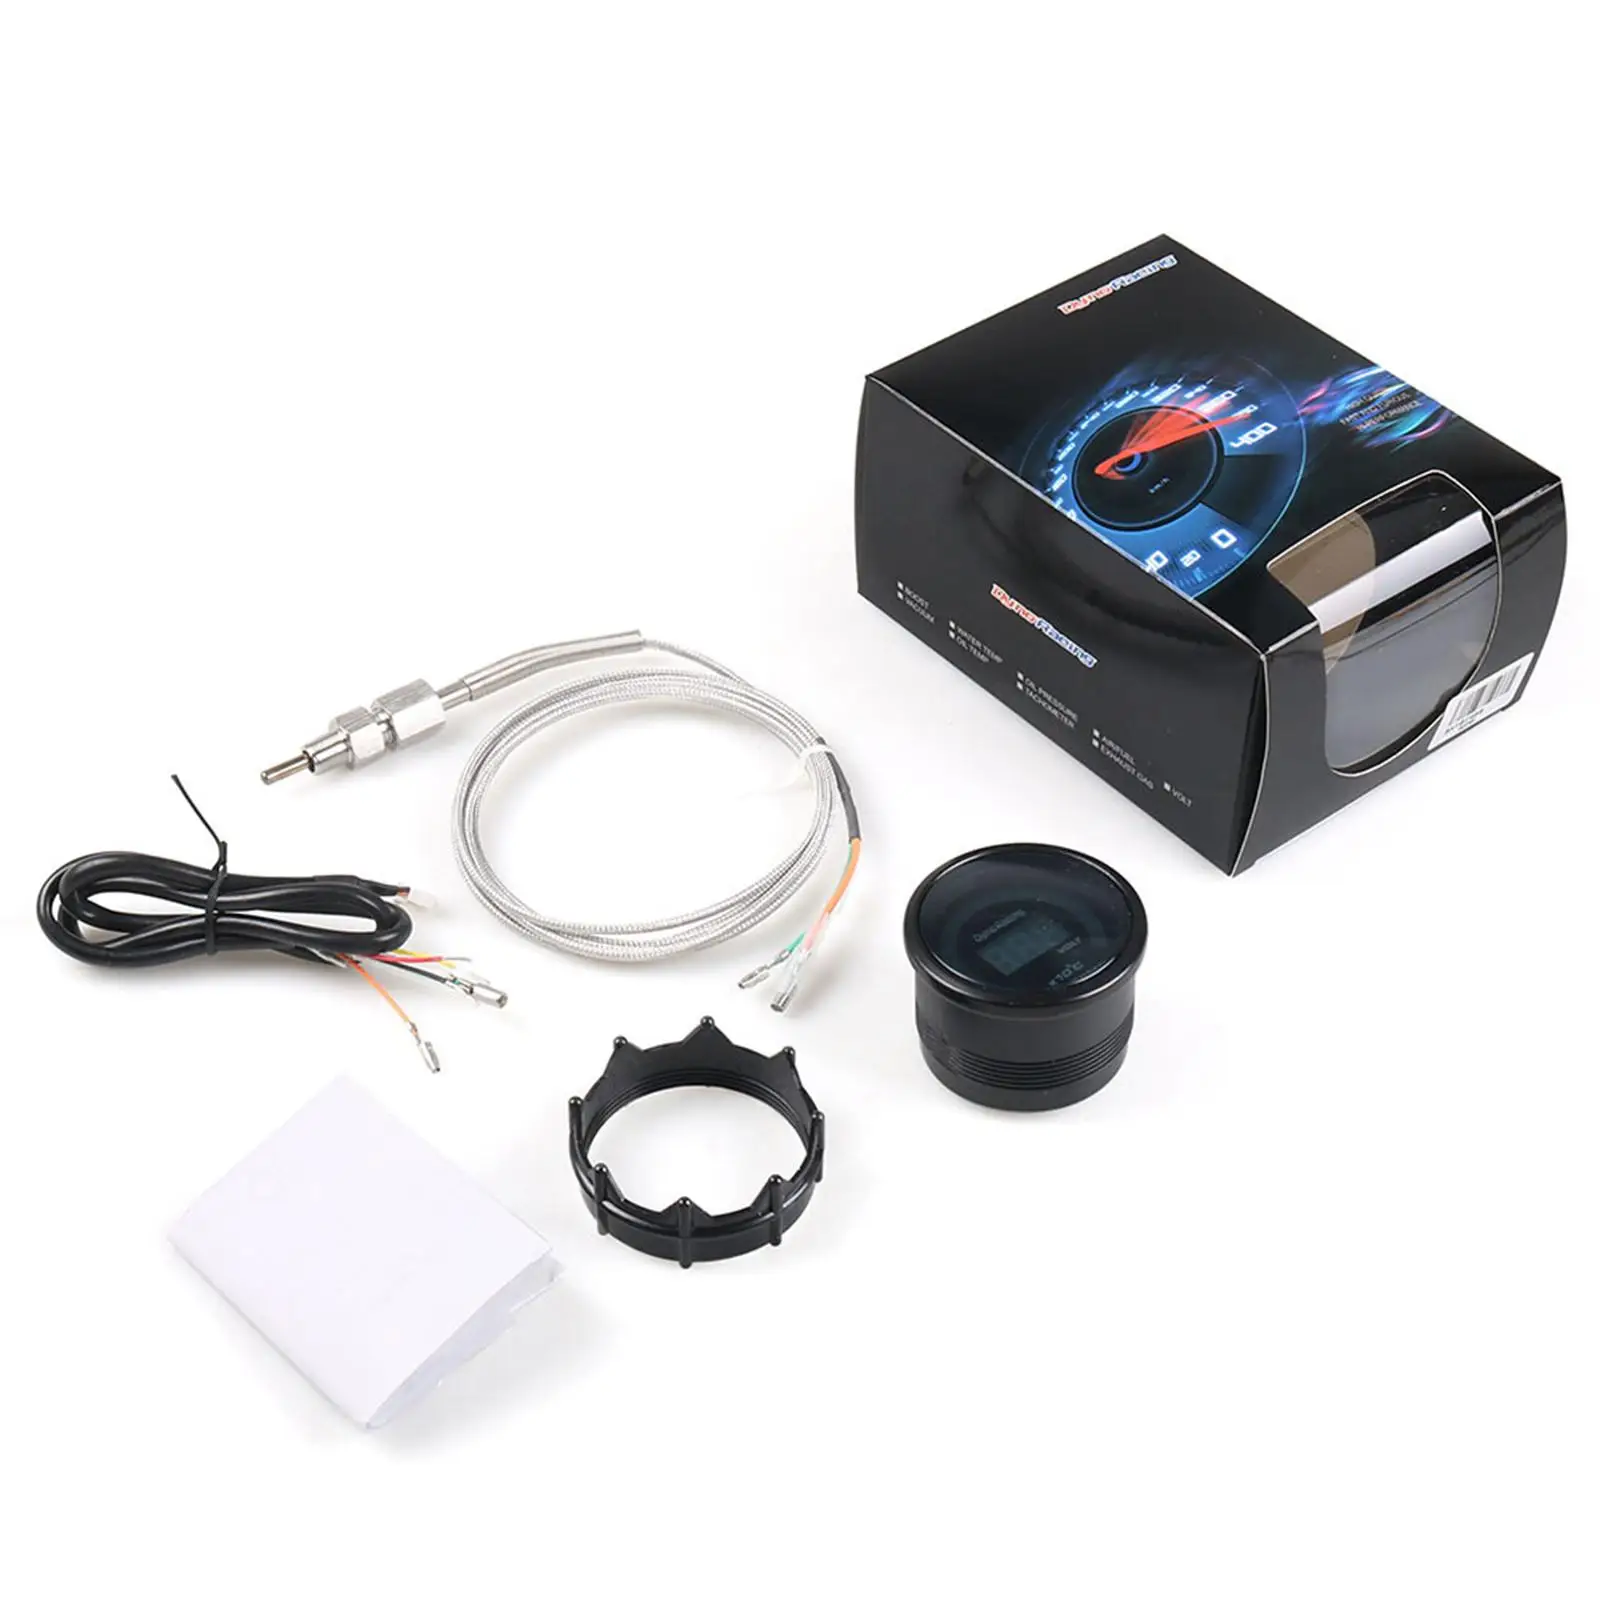 Car Exhaust Gas Temp Gauge Meter Set Universal Easy to Install Digital Pyrometer Gauge Car Meter Digital Display Pointer